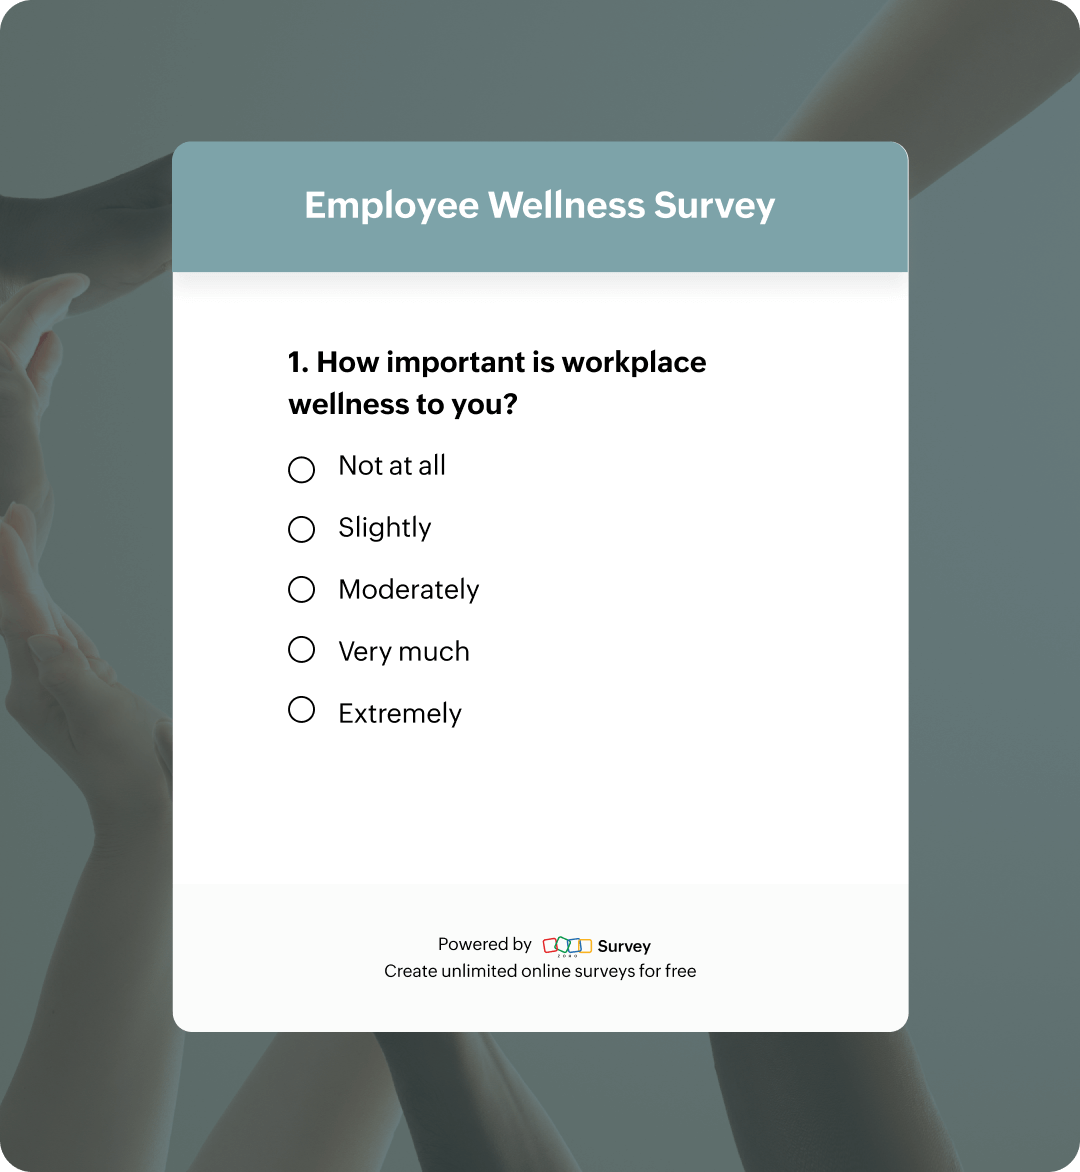 Employee wellness survey questionnaire template